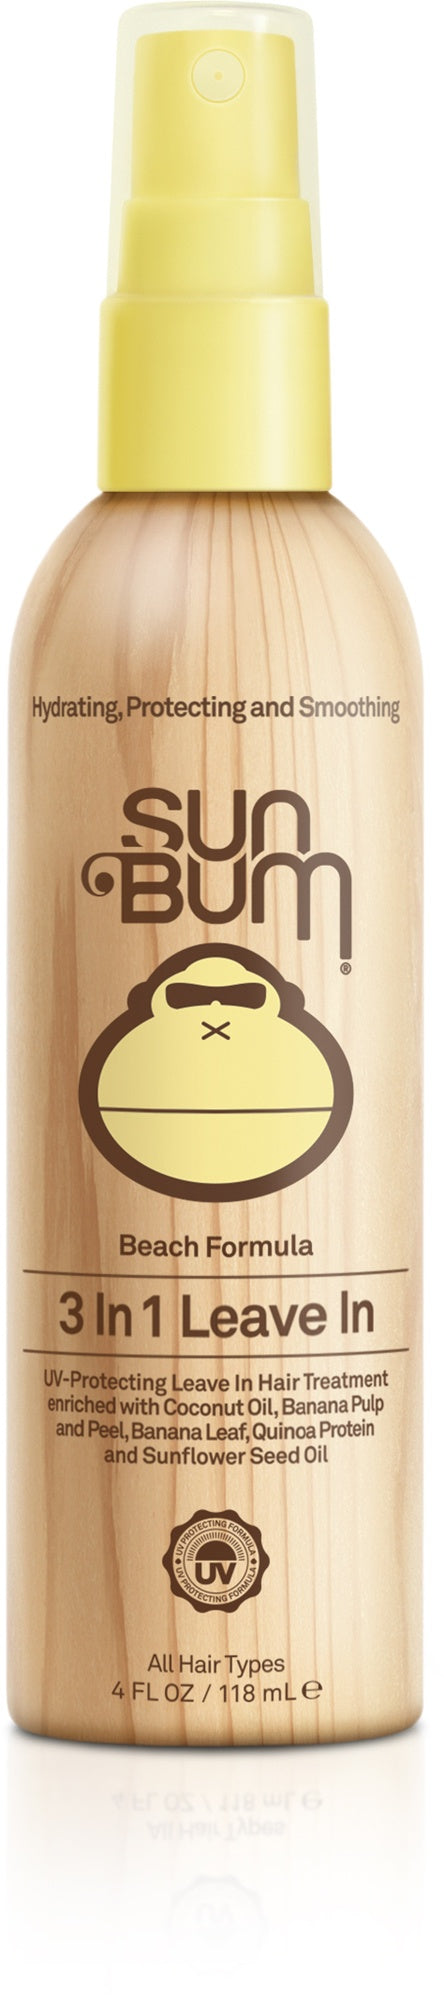 SUN BUM 3 IN 1 LEAVE IN HAIR CARE SPRAY 118ml - Powerhousesurf